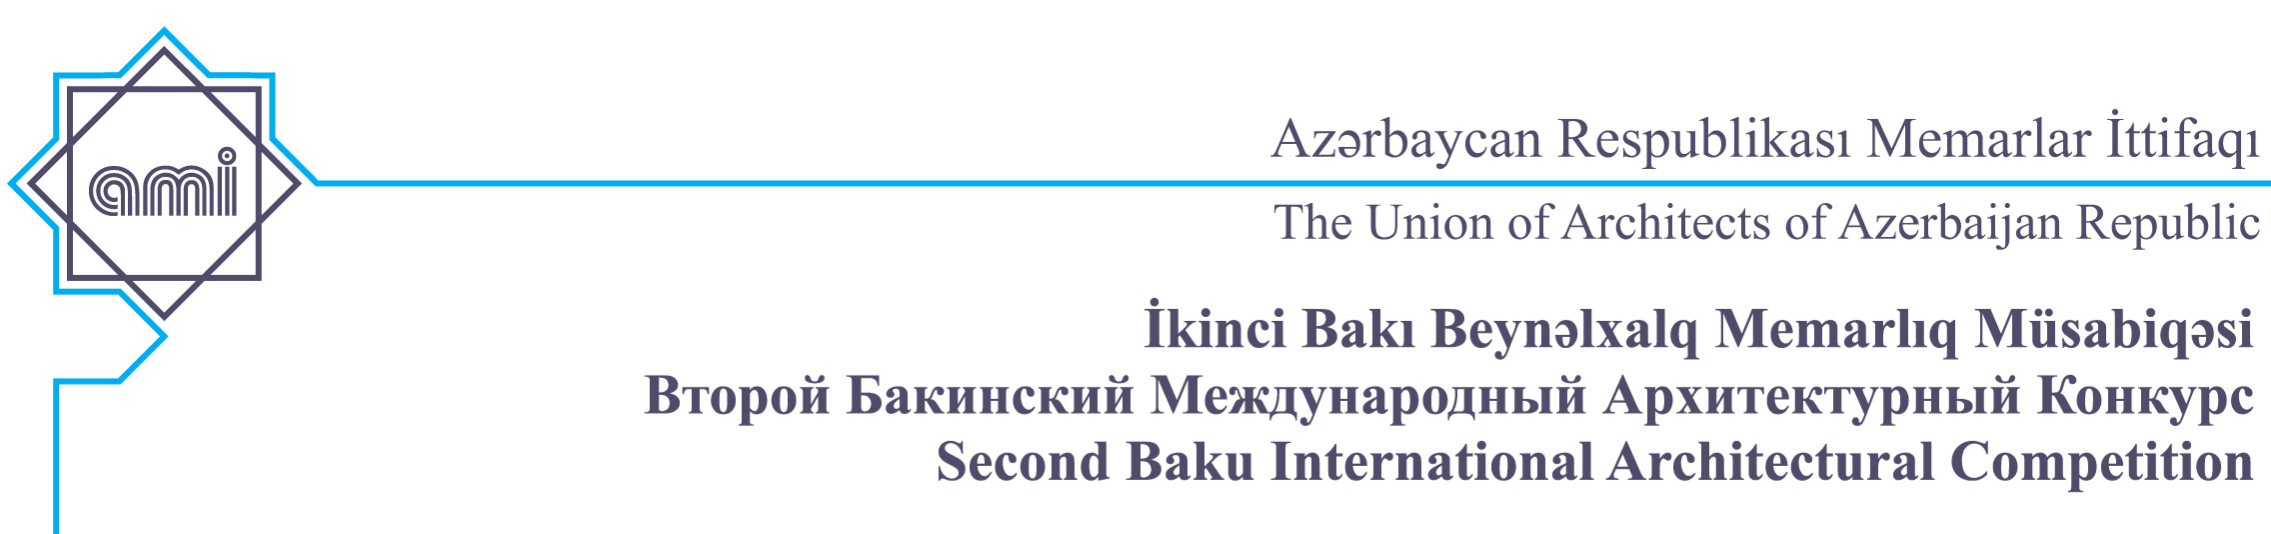 Второй Бакинский международный архитектурный конкурс